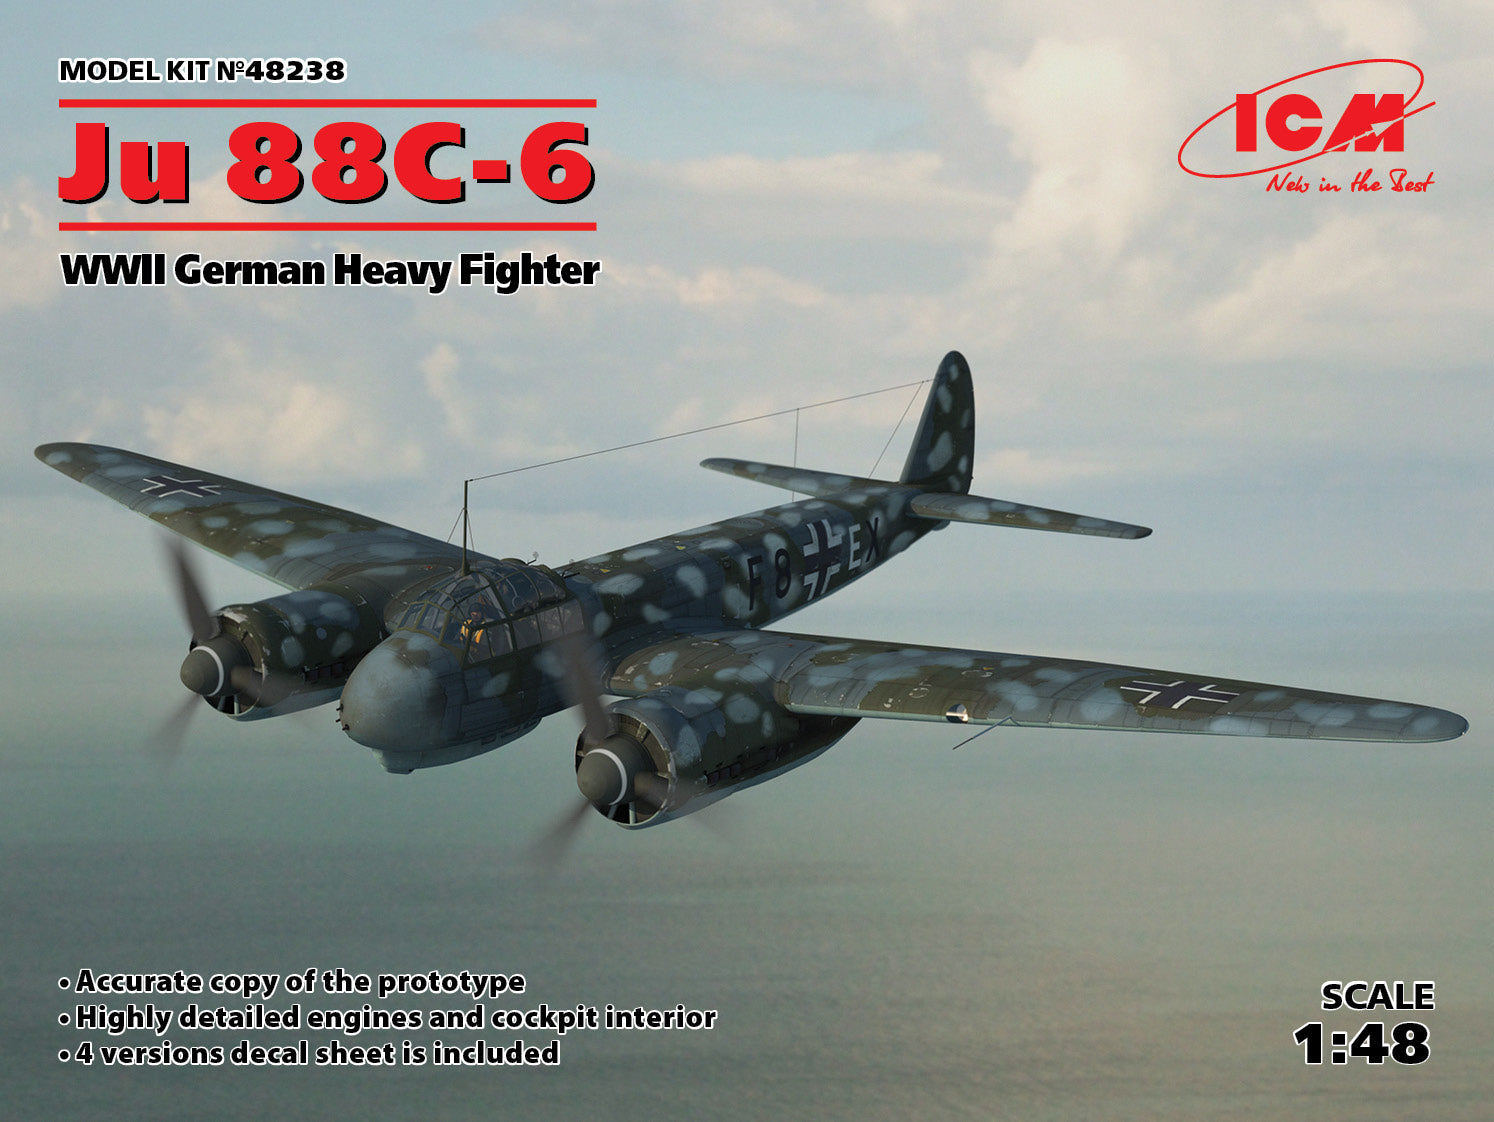 1/48 Ju 88C-6 WWII German Heavy Fighter. ICM 48238